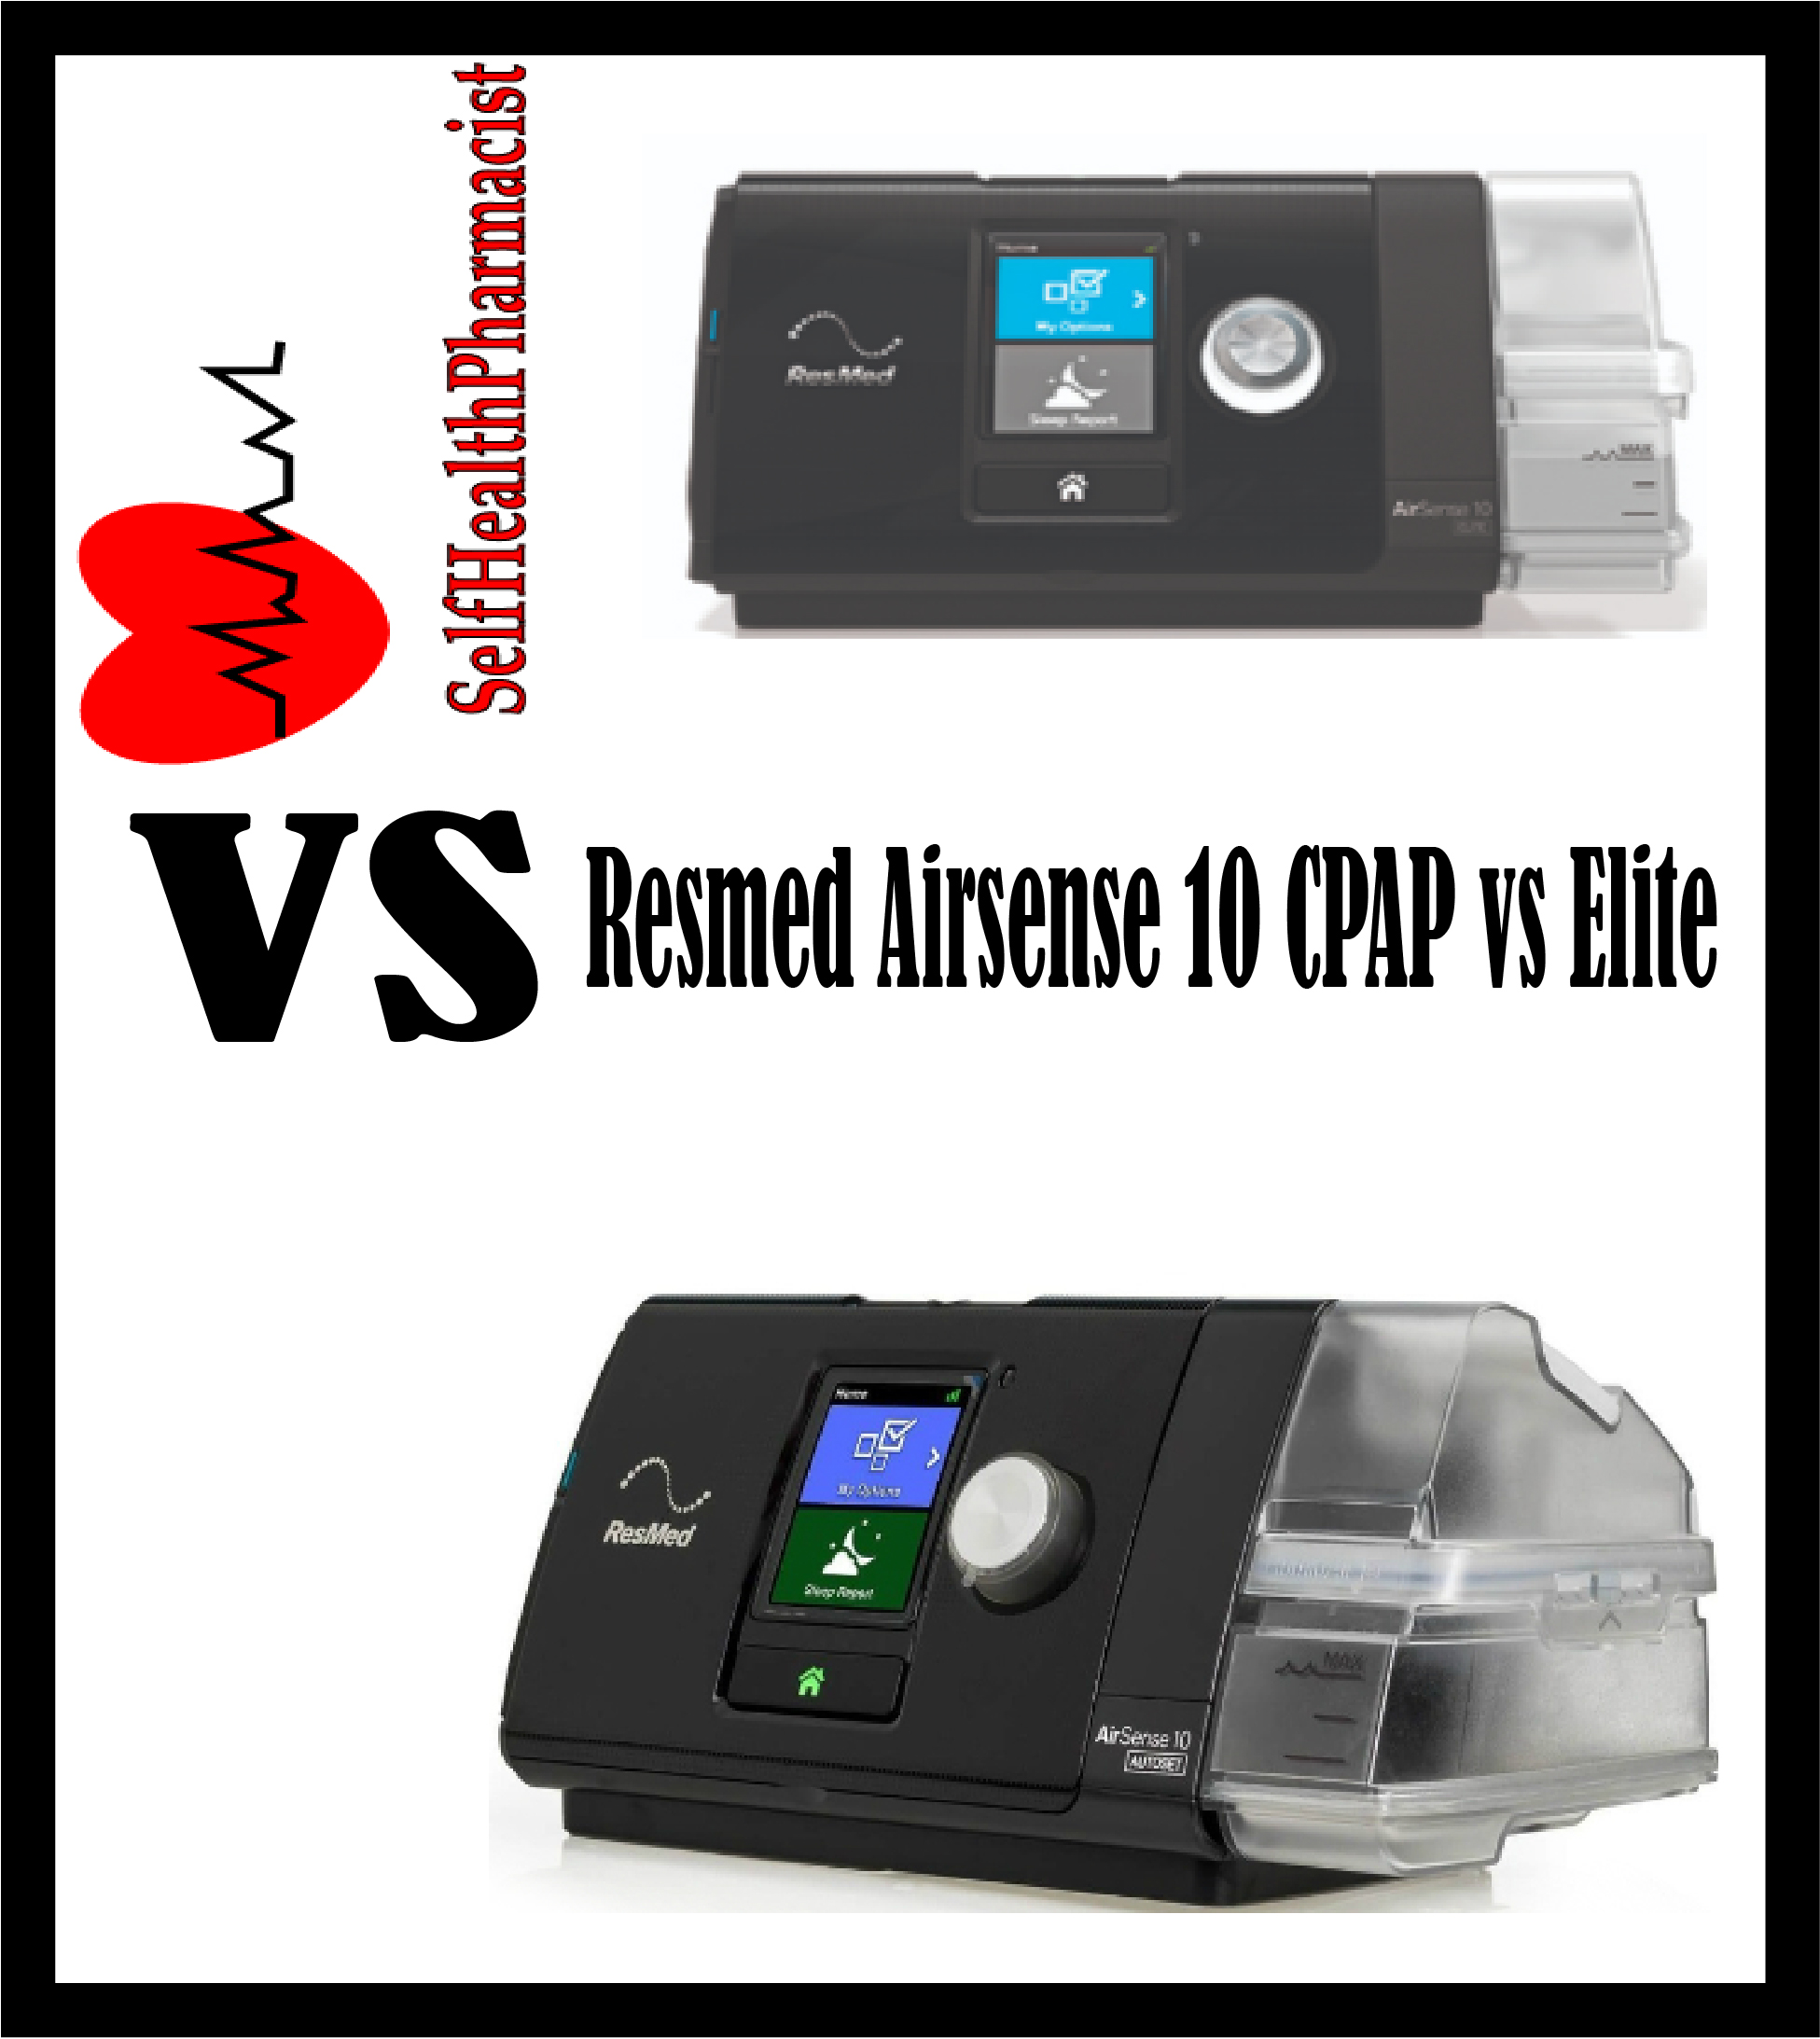 Resmed Airsense 10 CPAP vs Elite